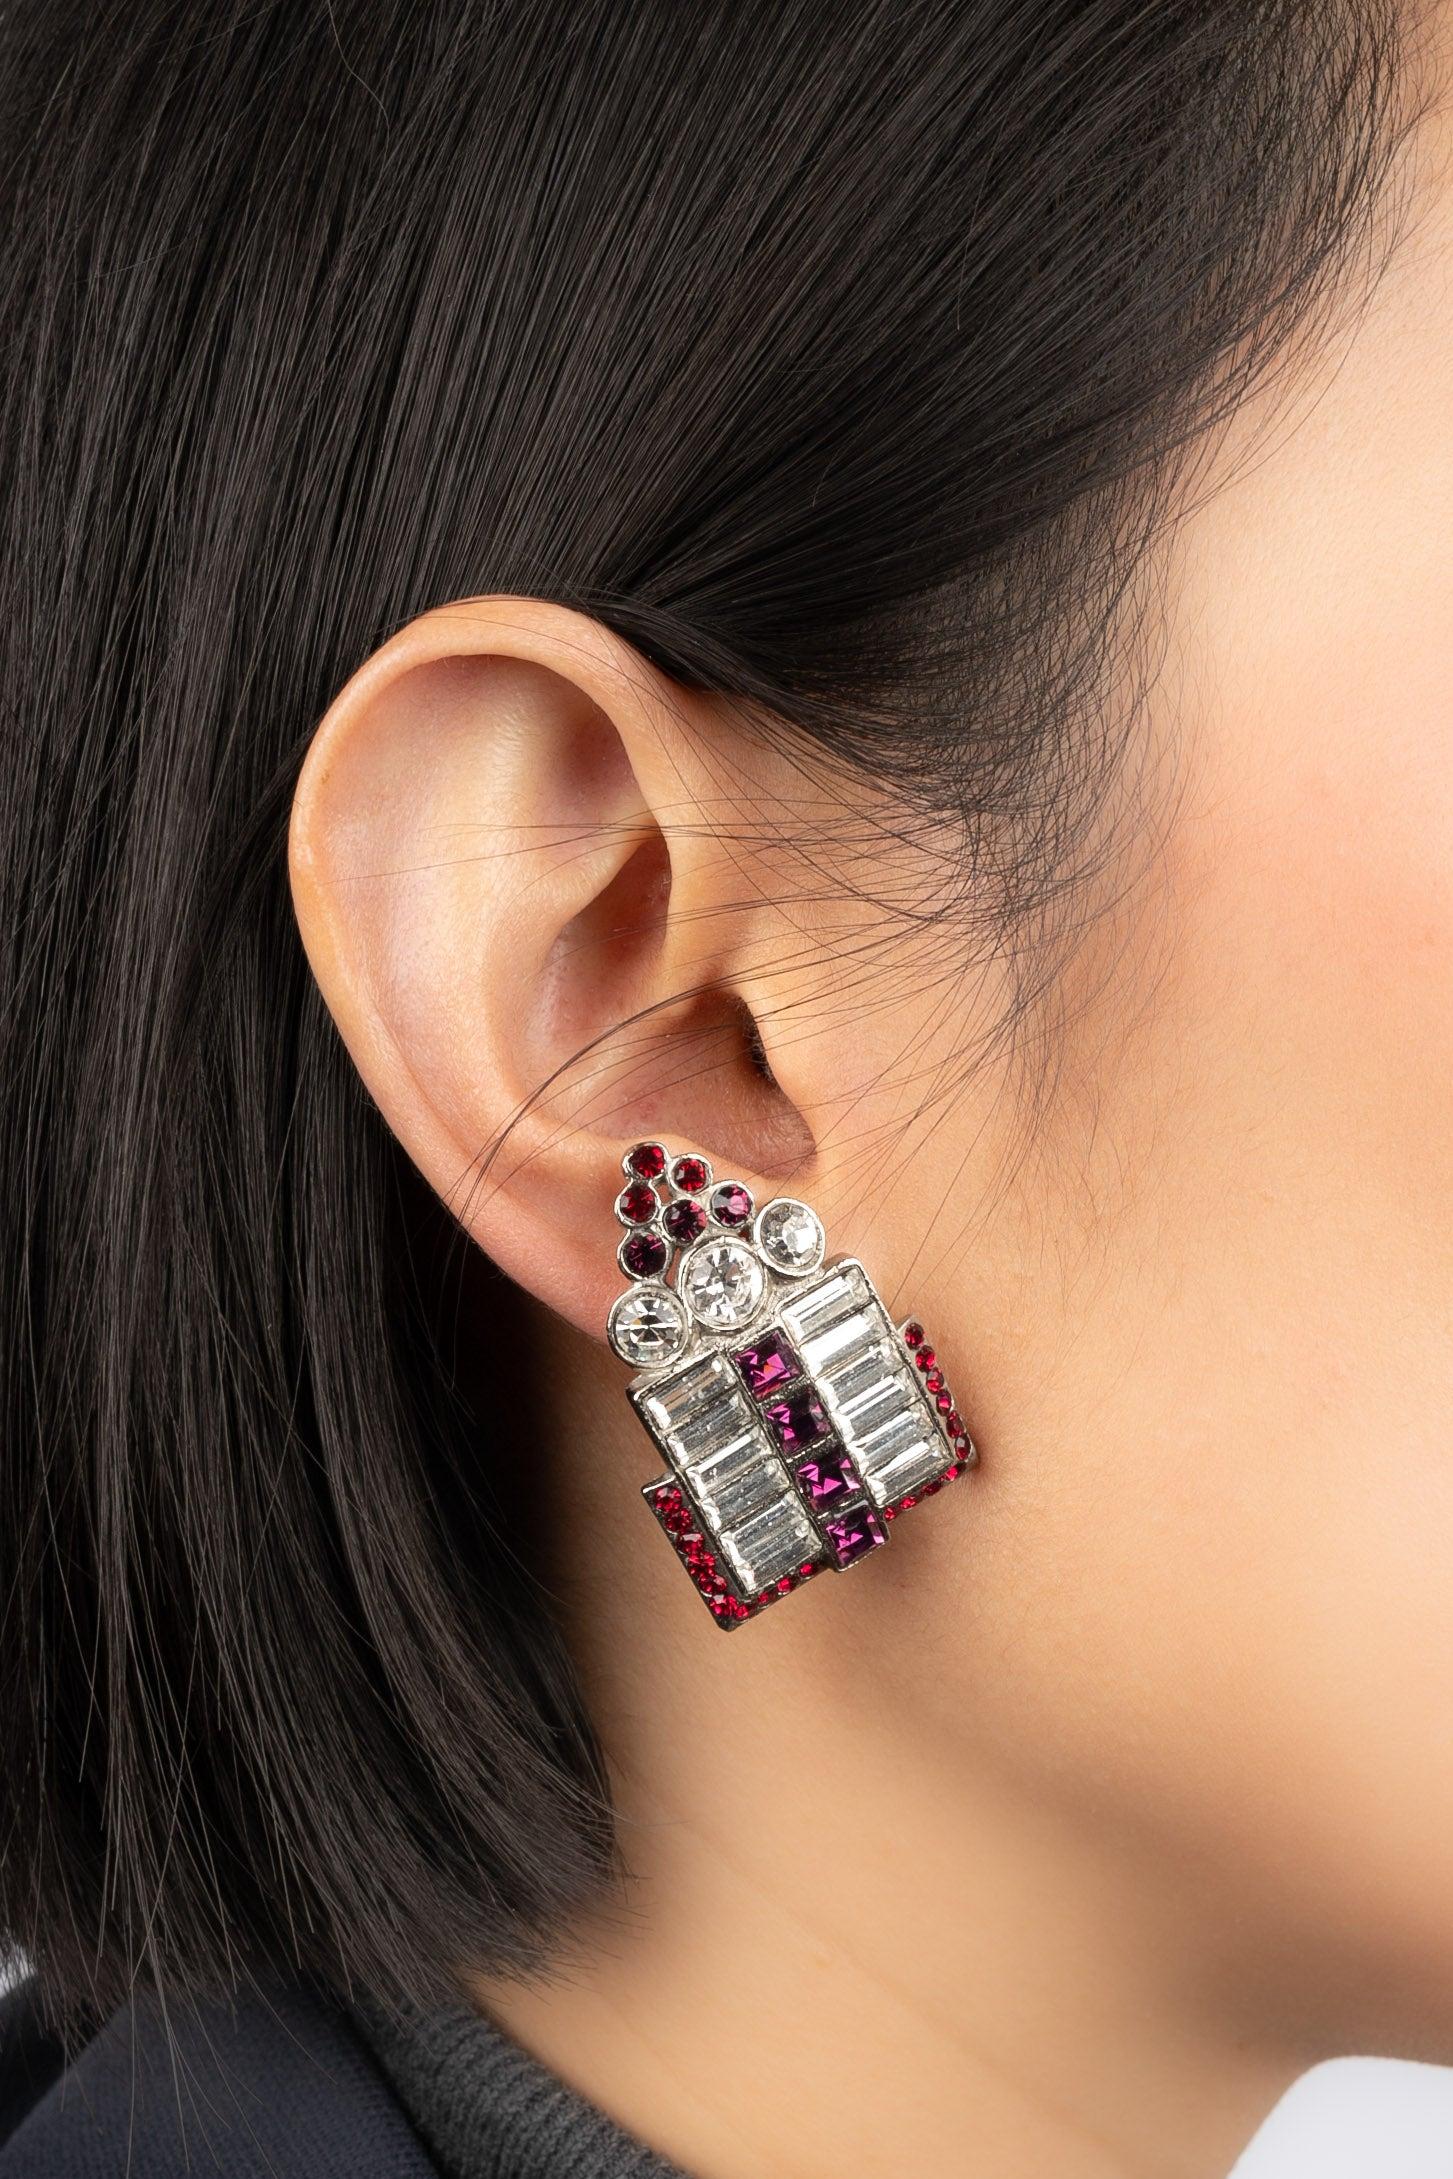 Dior - (Fabriqué en France) Boucles d'oreilles à clip en métal argenté ornées de strass.

Informations complémentaires :
Condit : Très bon état.
Dimensions : 4 cm x 2,5 cm : 4 cm x 2,5 cm

Référence du vendeur : BO102